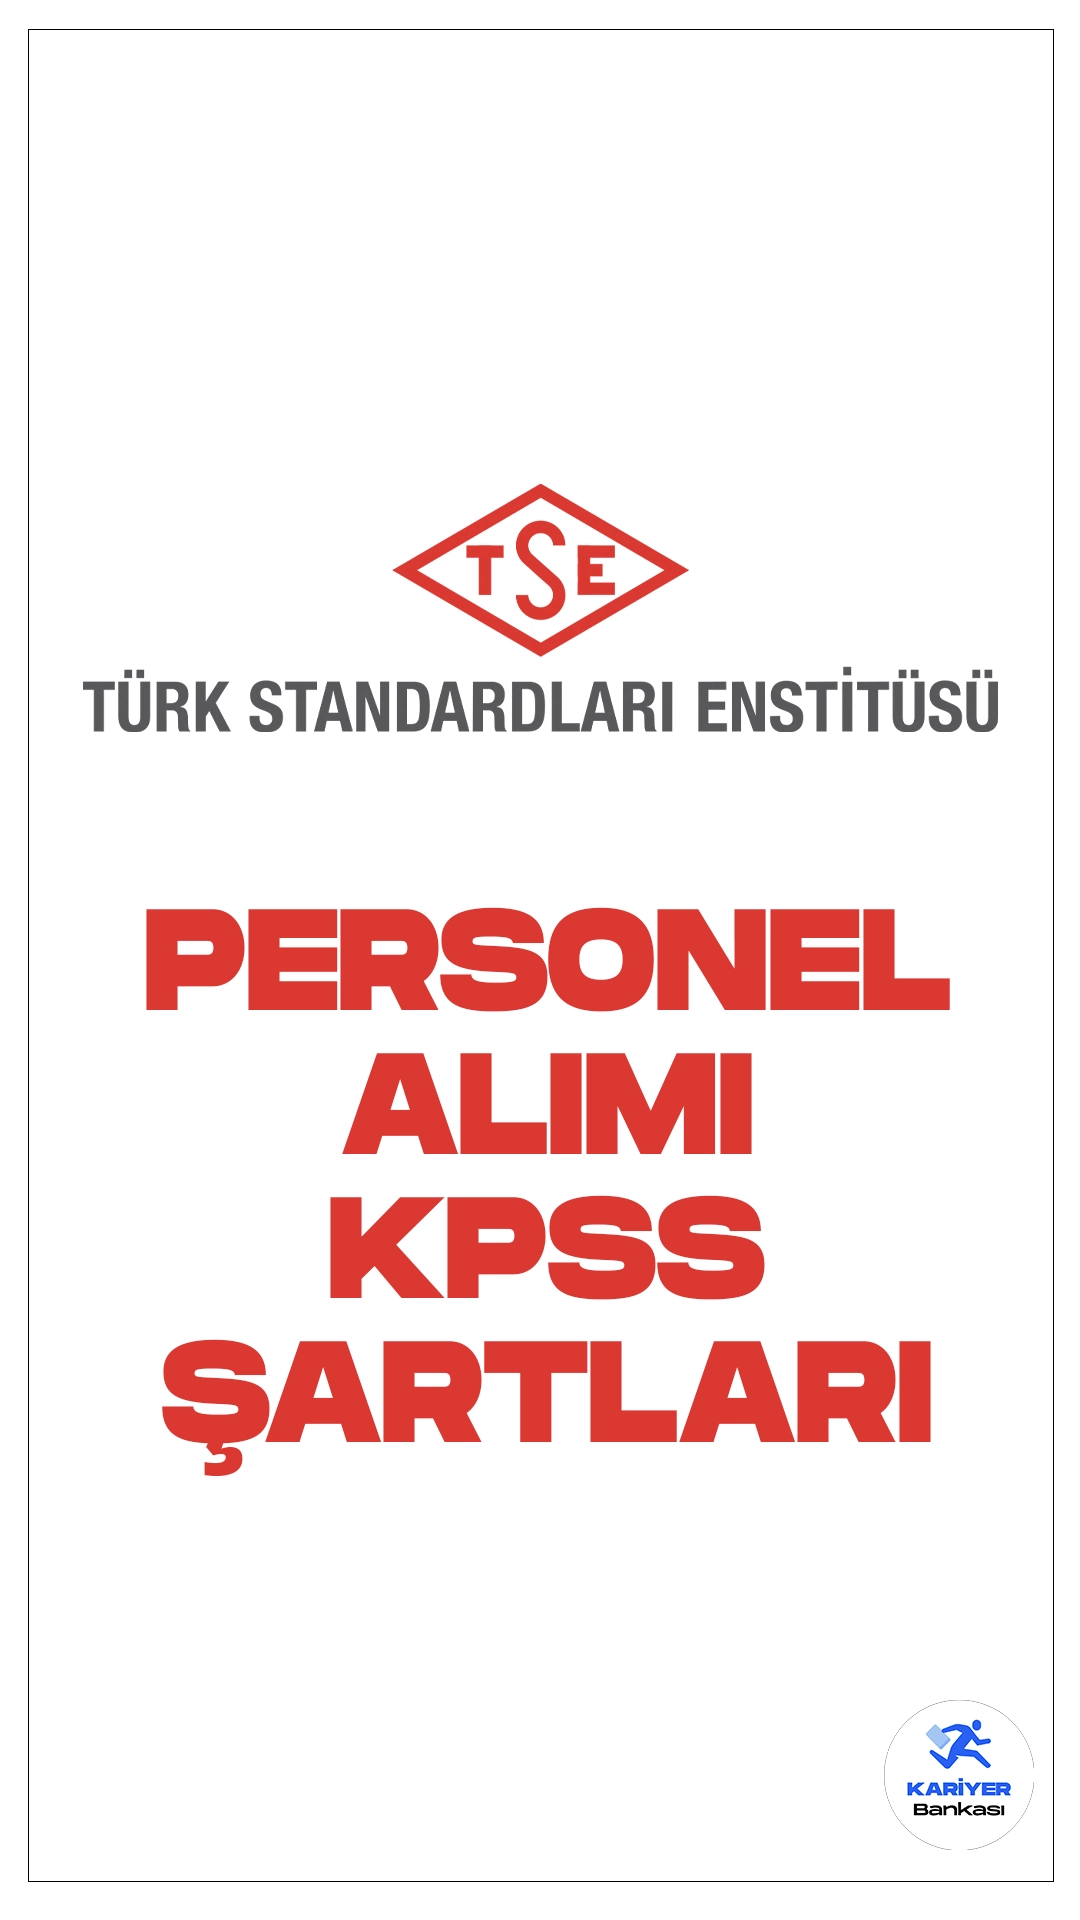 Türk Standartları Enstitüsü (TSE) KPSS En Az 70 Puanla 34 Personel Alımı Sürüyor.Resmi Gazete'de yayımlanan duyuruya göre, Türk Standartları Enstitüsü (TSE) mühendis, tekniker, memur, koruma ve güvenlik görevlisi ve odacı(hizmetli) pozisyonları. için sözleşmeli personel alımı yapılacak. Başvuru yapacak adaylarda KPSS’den en az 70 puan alma şartı aranırken, adayların belirtilen genel ve özel şartları taşıması gerektiği kaydedildi. İşte şartlar, kontenjanlar ve başvuru sayfası..